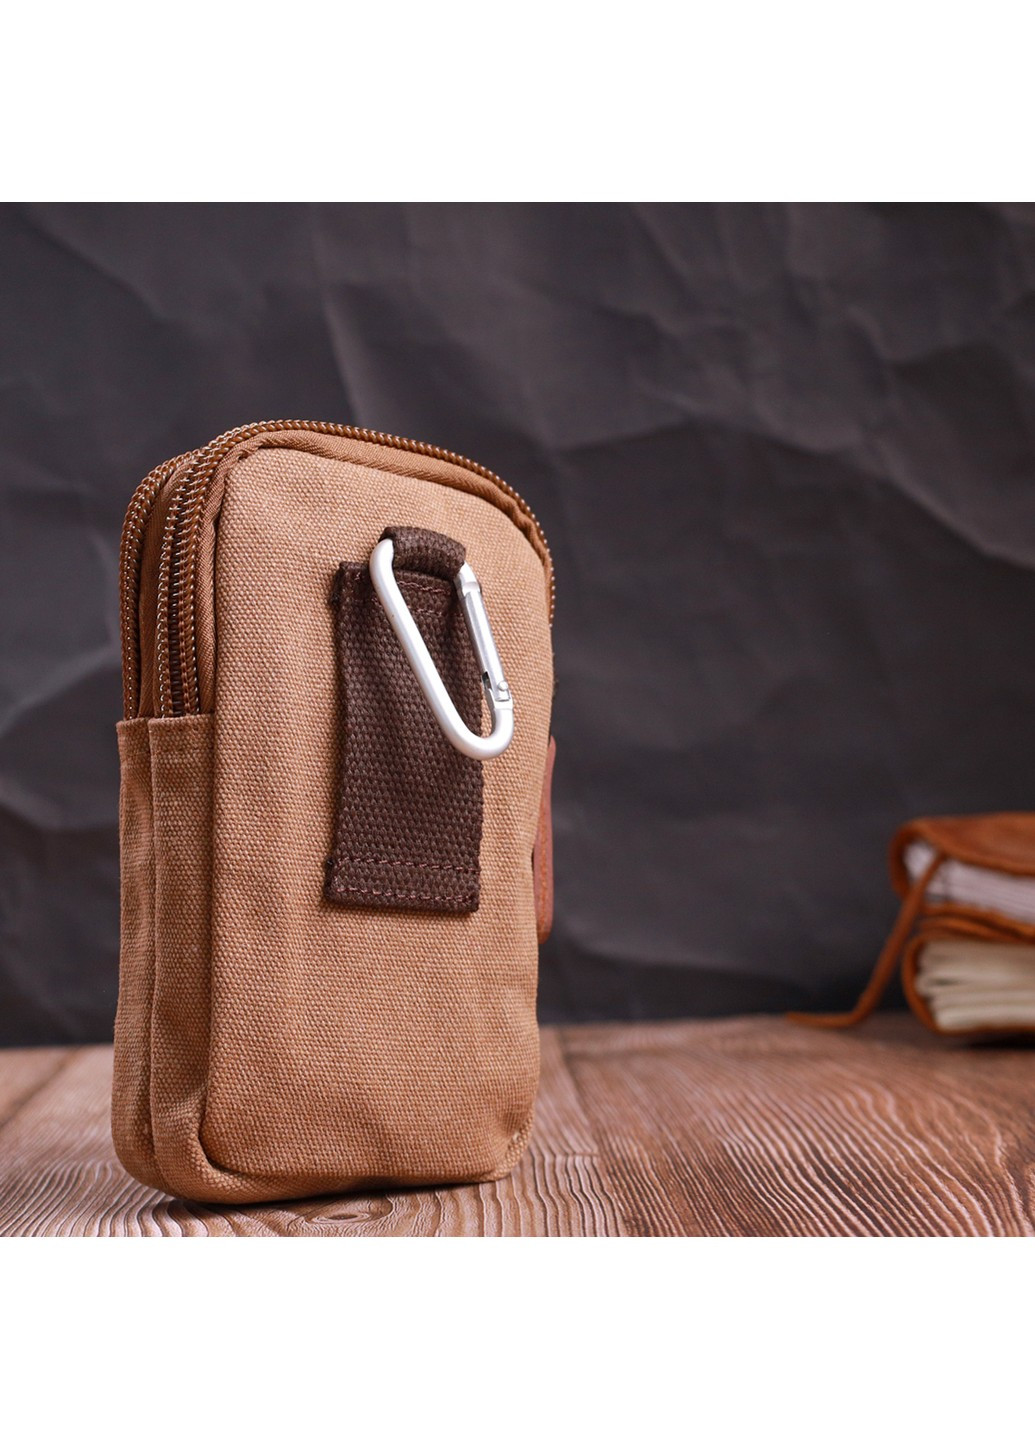 Добротная сумка-чехол на пояс с металлическим карабином из текстиля 22225 Коричневый Vintage (267932161)